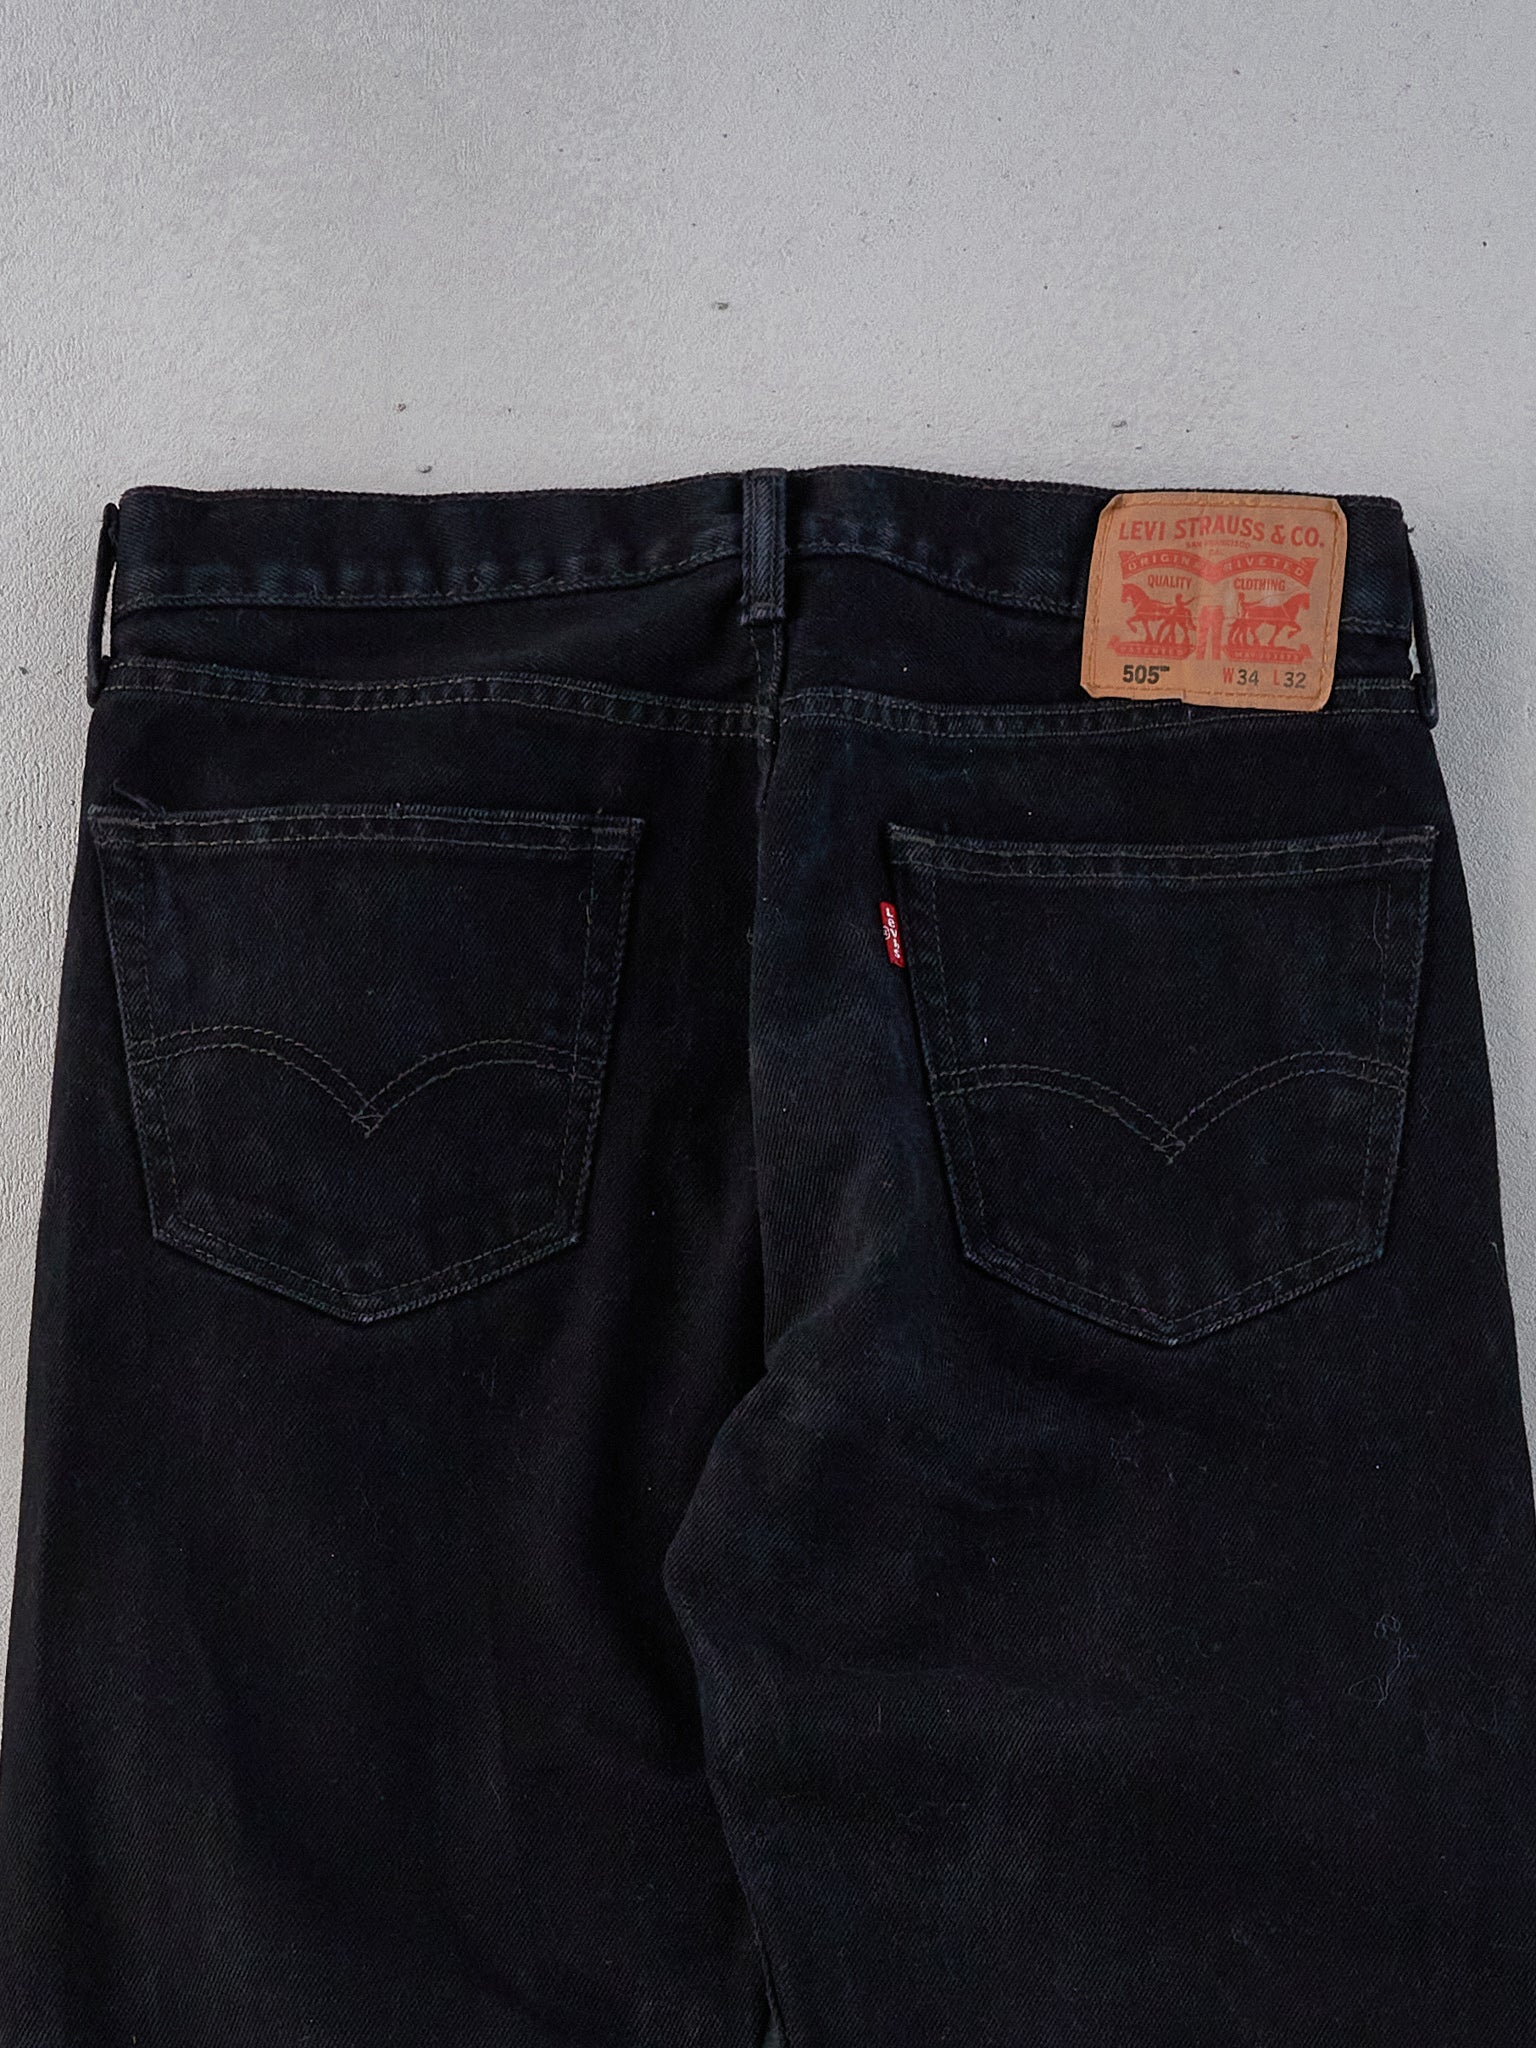 Vintage 90s Black Levi's 505 Denim Jeans (34x31)